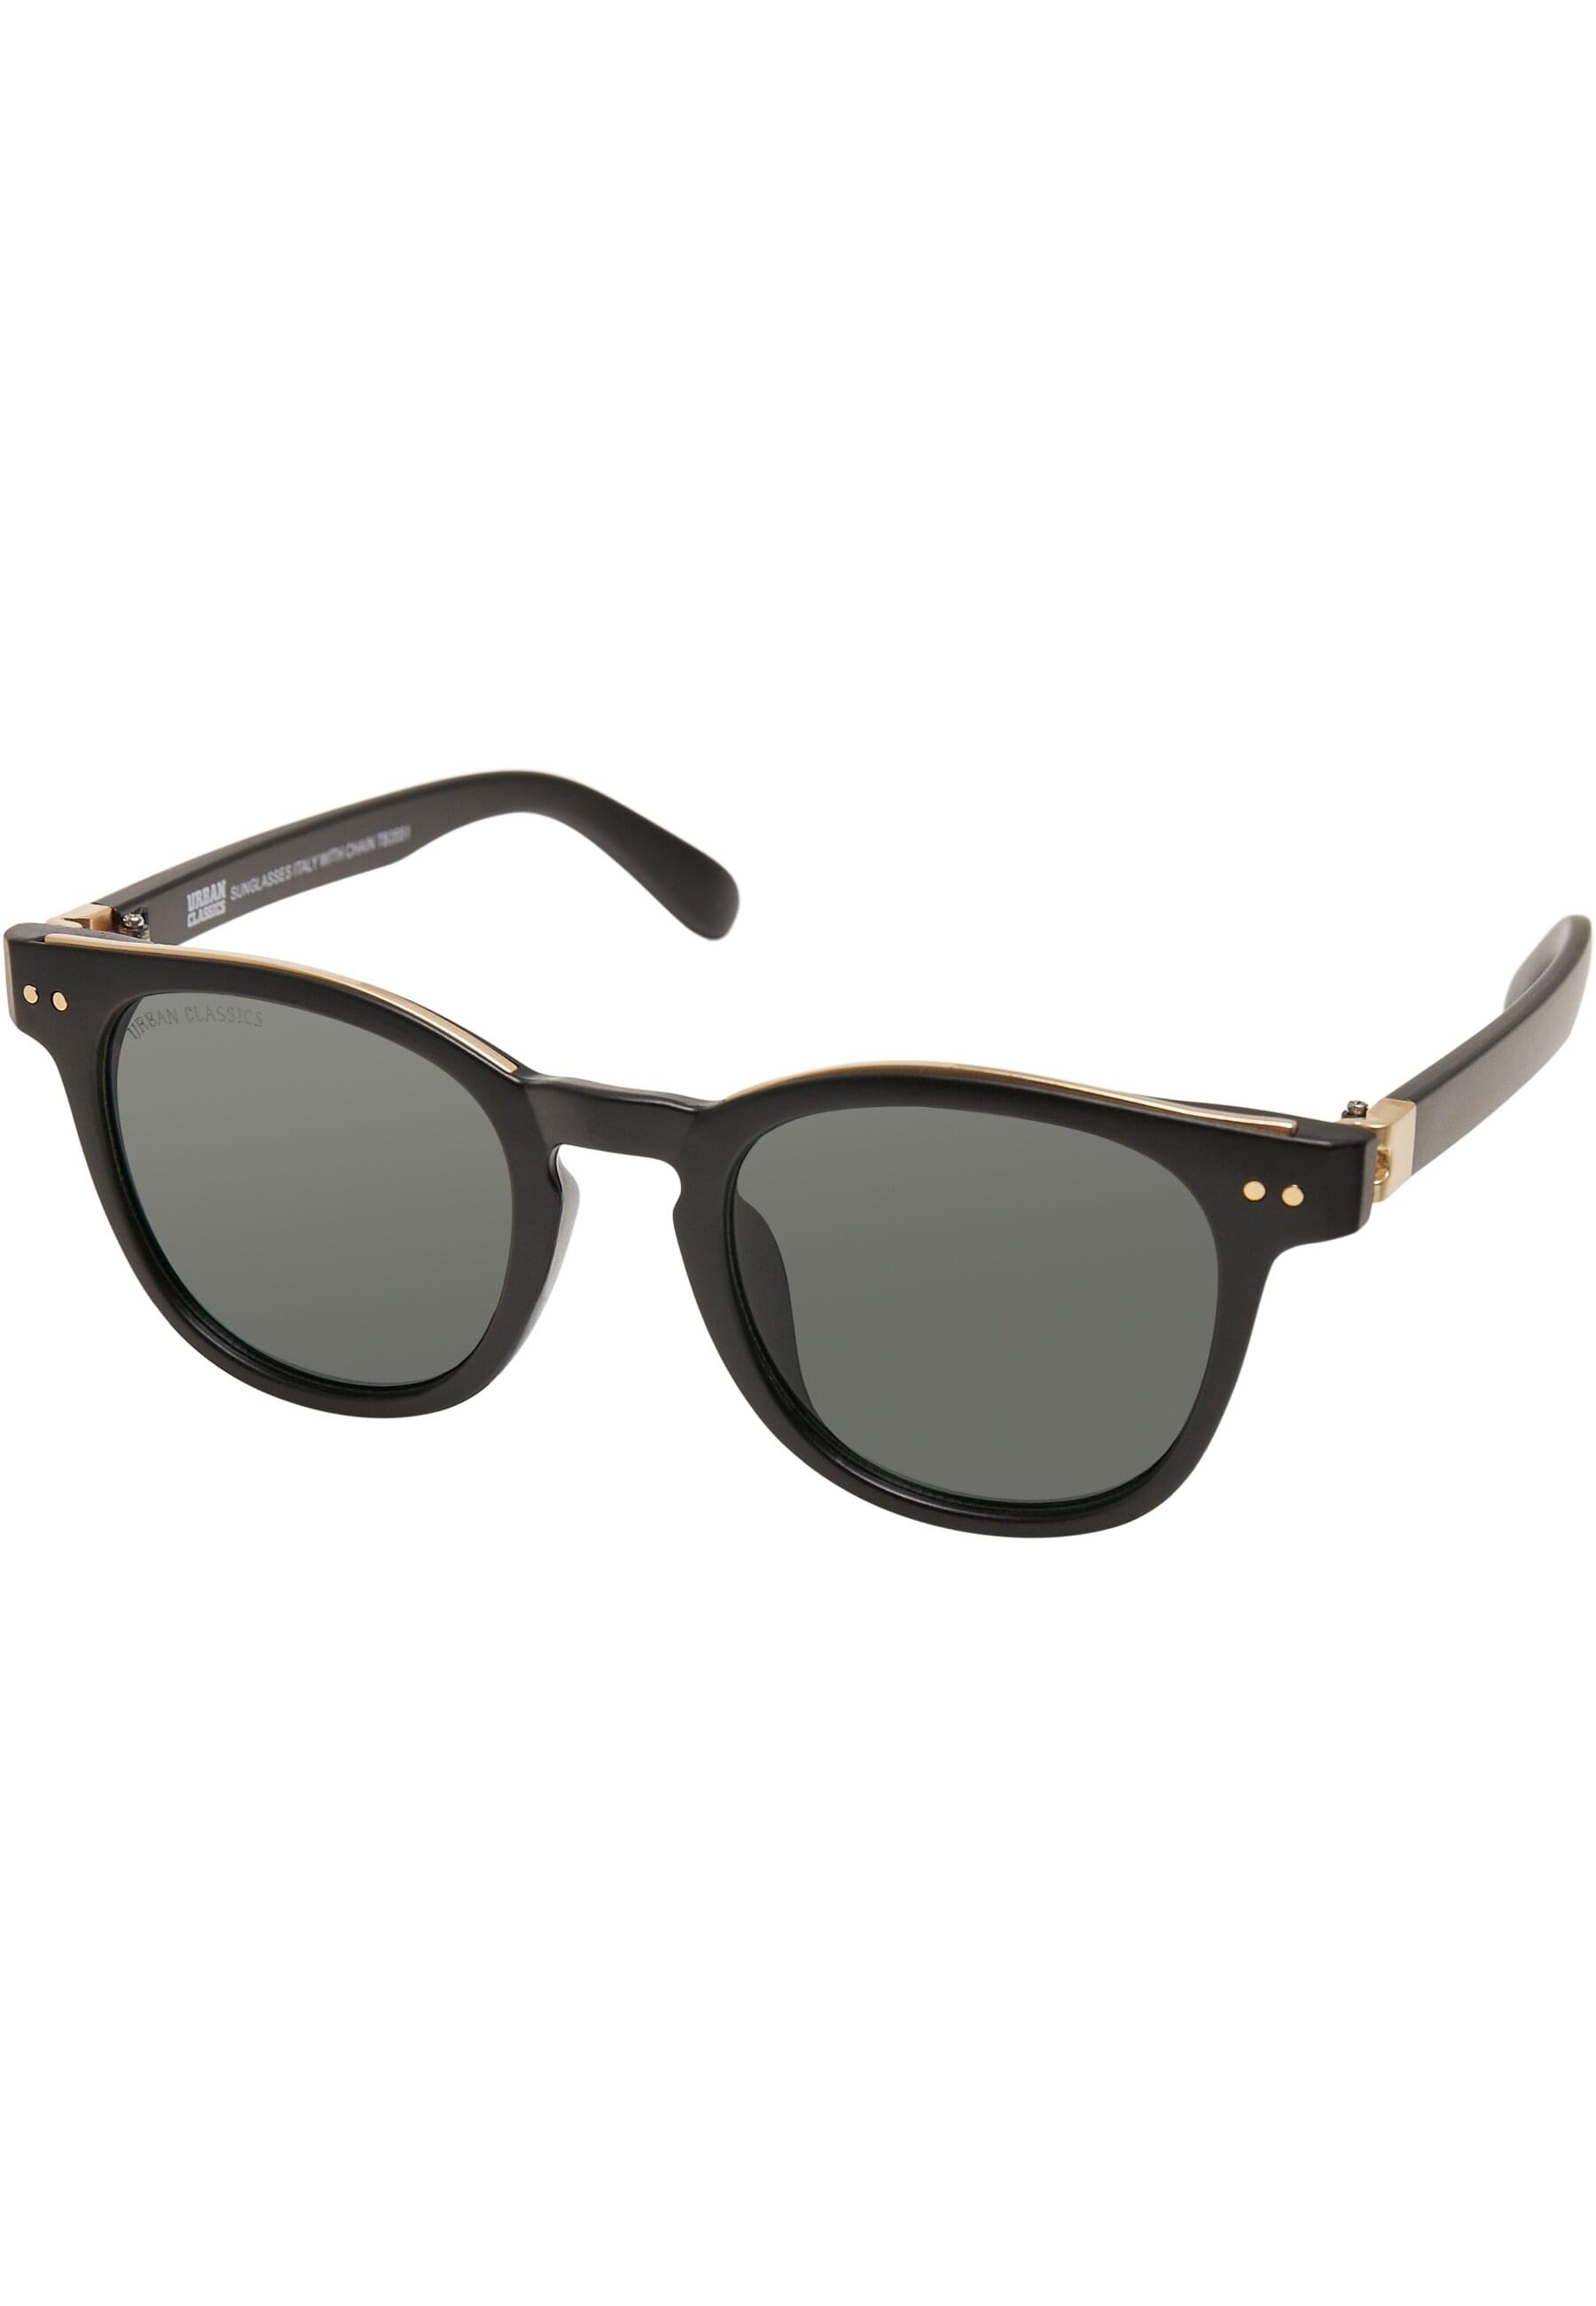 BAUR | URBAN with CLASSICS online Italy bestellen Sonnenbrille chain« »Unisex Sunglasses